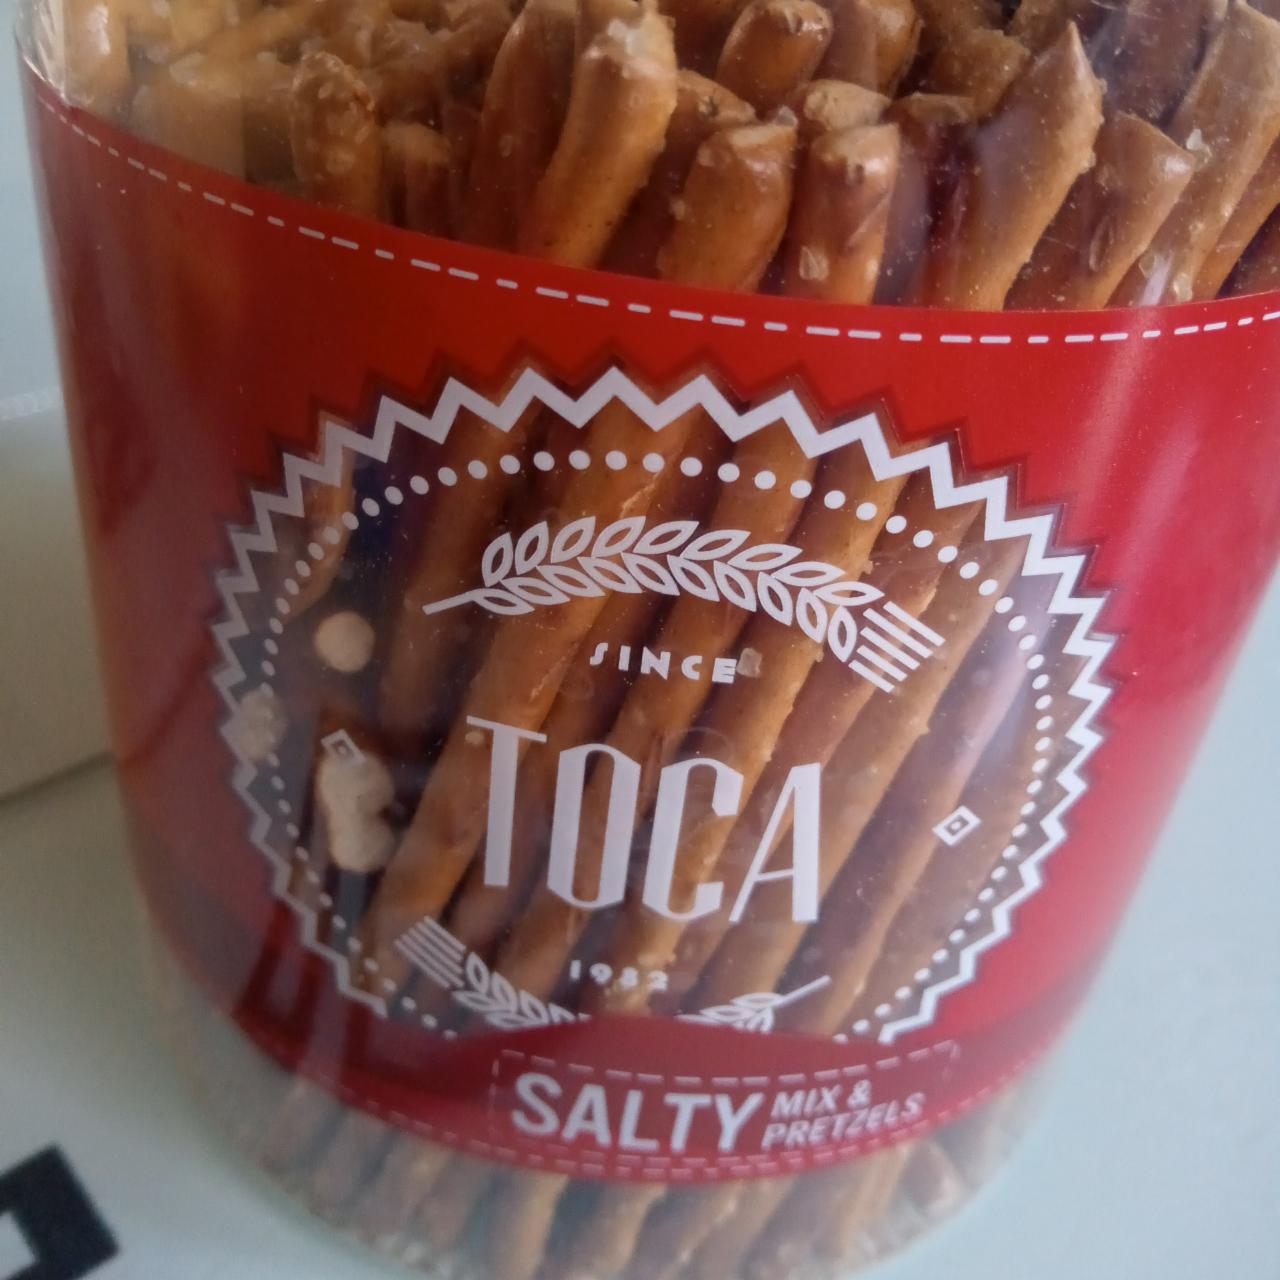 Zdjęcia - Salty mix & pretzels Toca